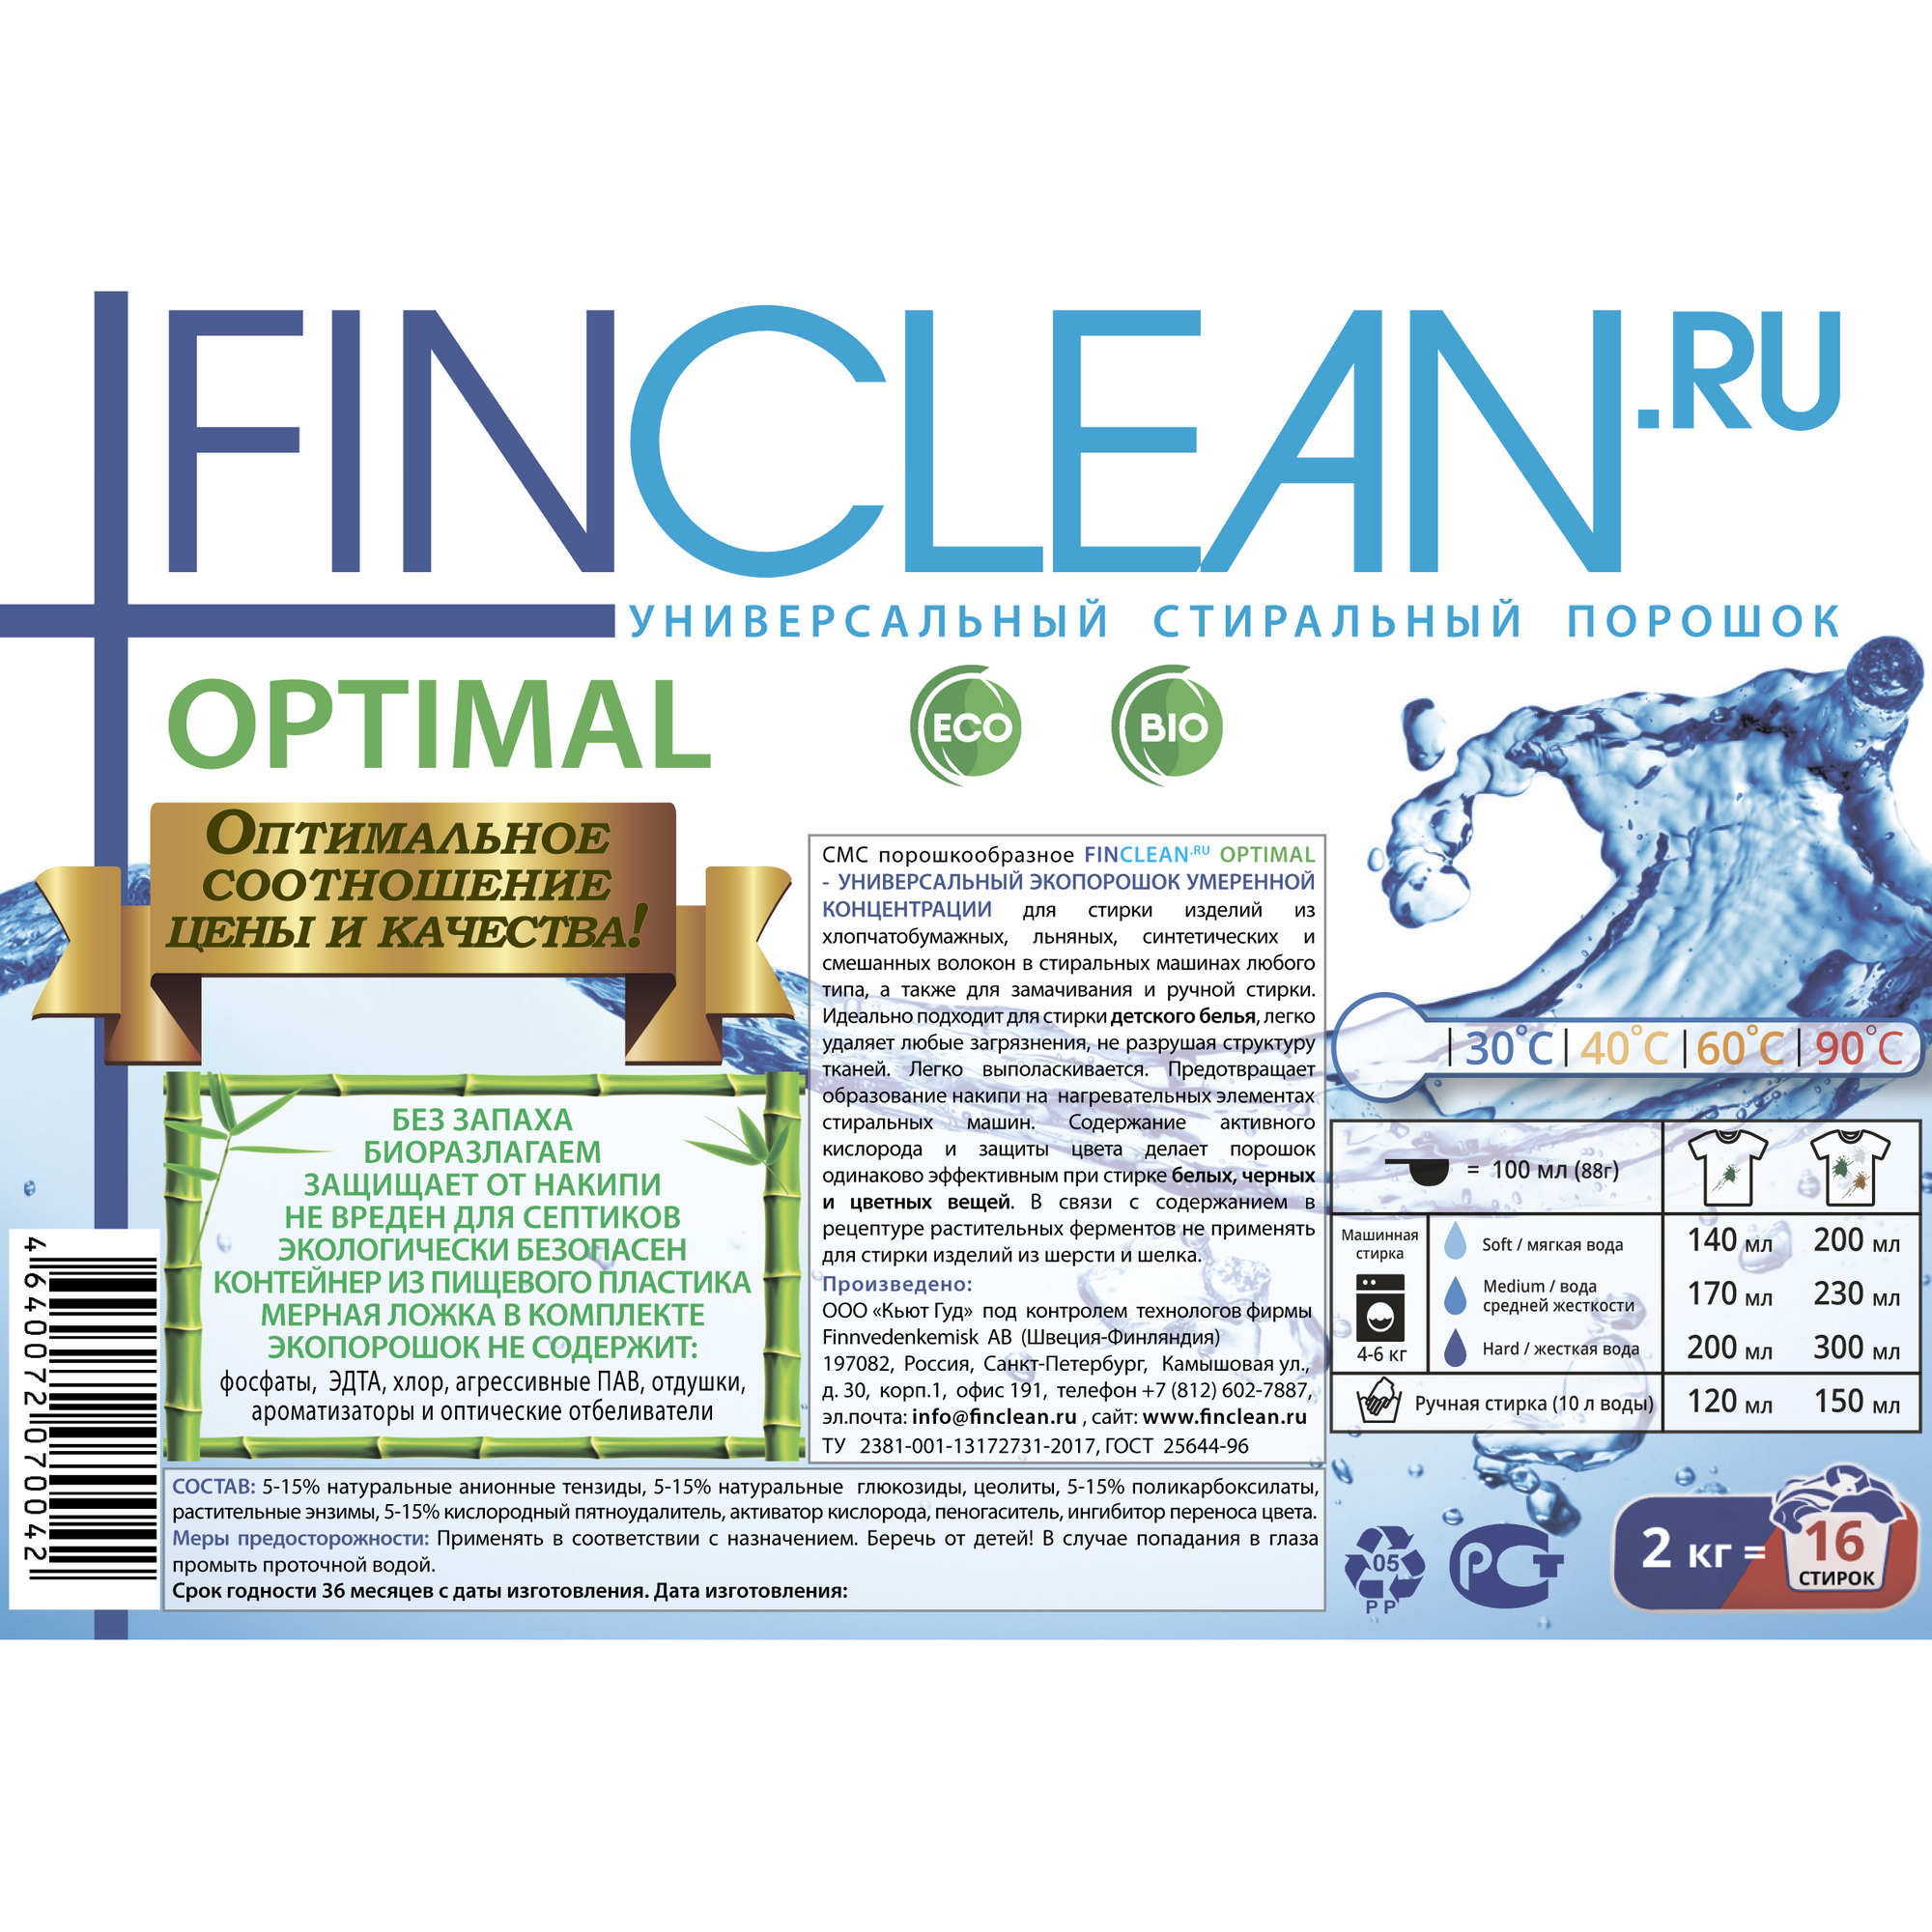 Стиральный эко-порошок FINCLEAN.RU Optimal 2 кг - 16 стирок универсальный умеренной концентрации - фото 3